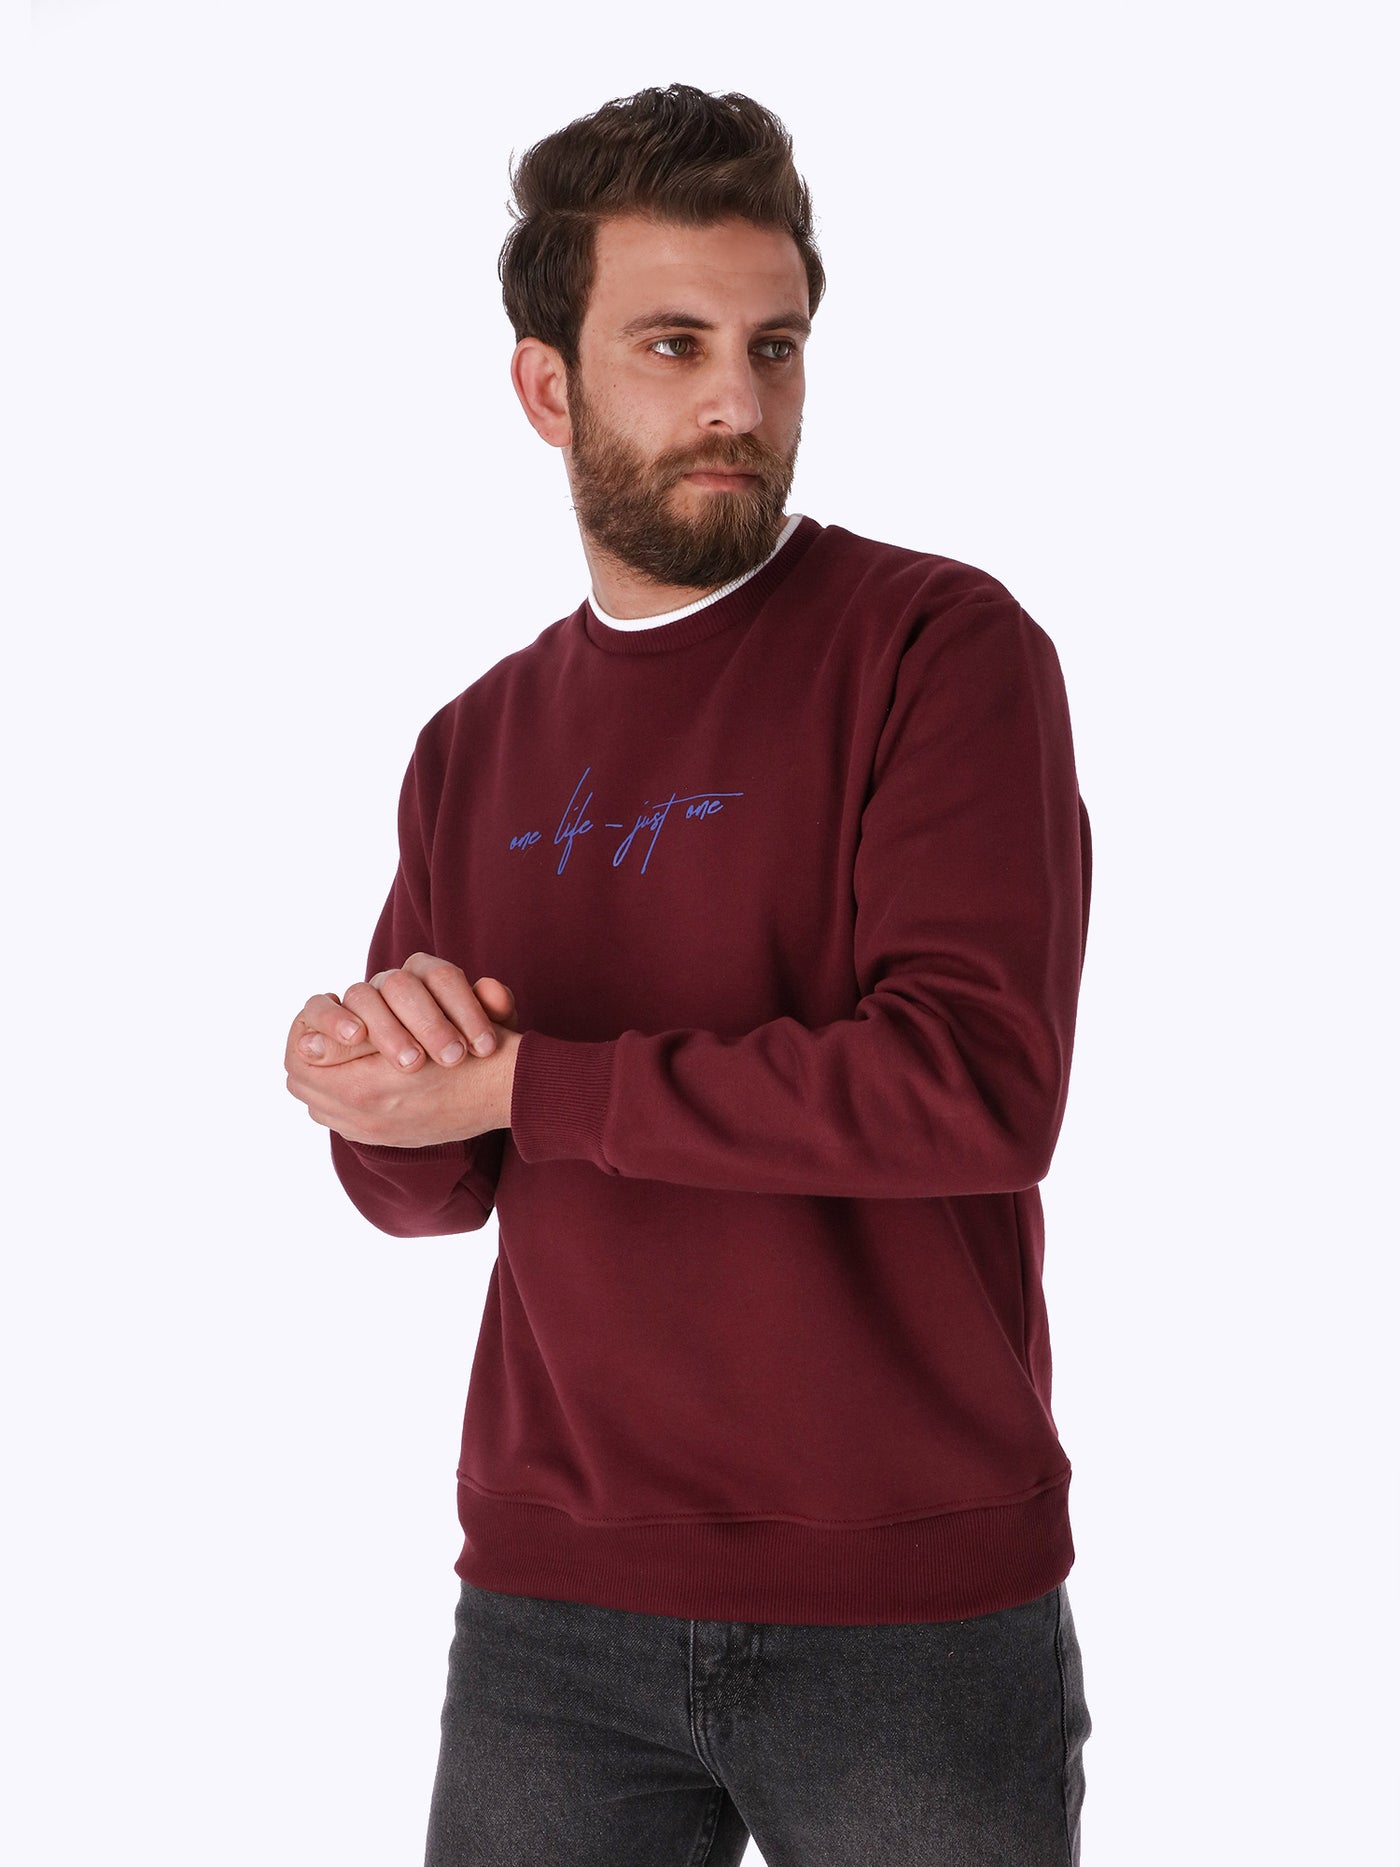 Sweatshirt - Front Text Print